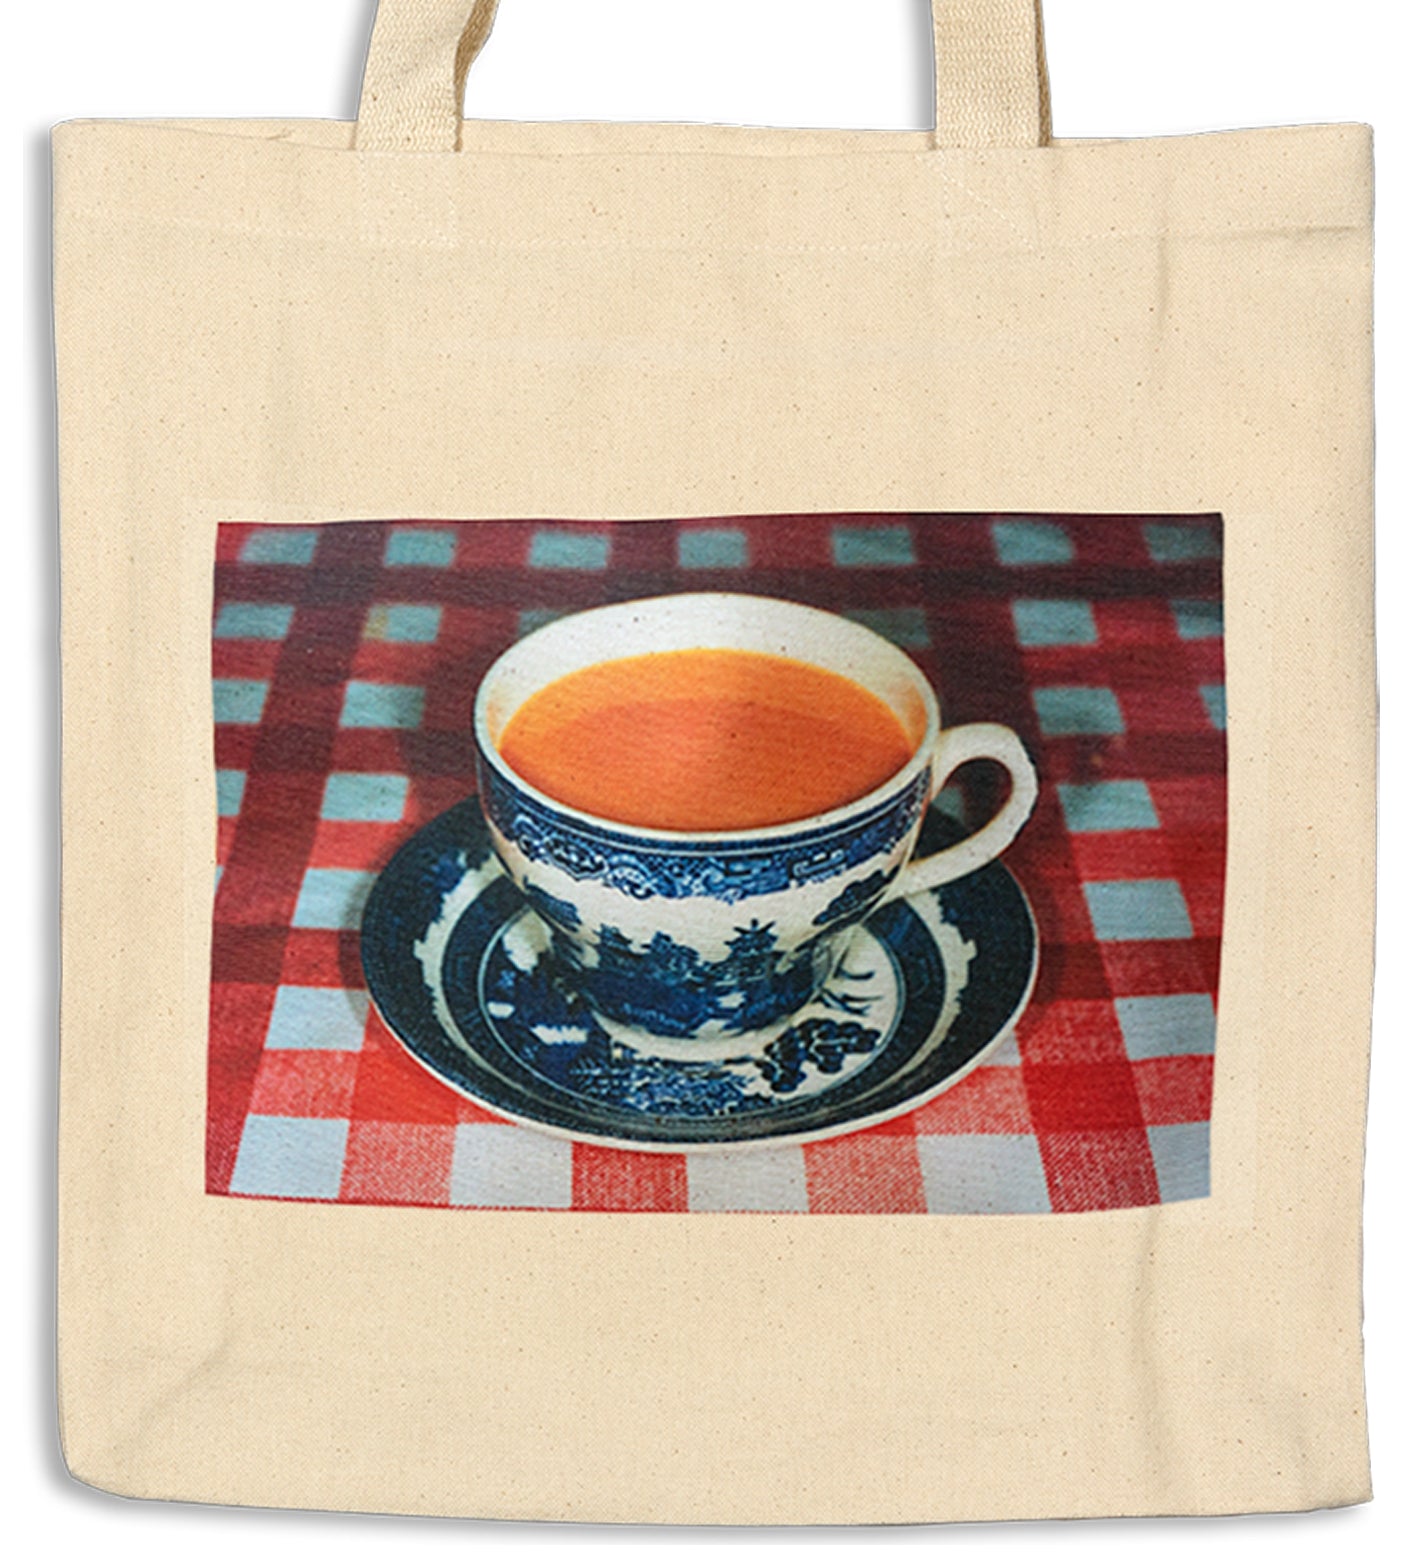 Martin Parr Tea Cup Tote bag (£12.00 incl VAT)